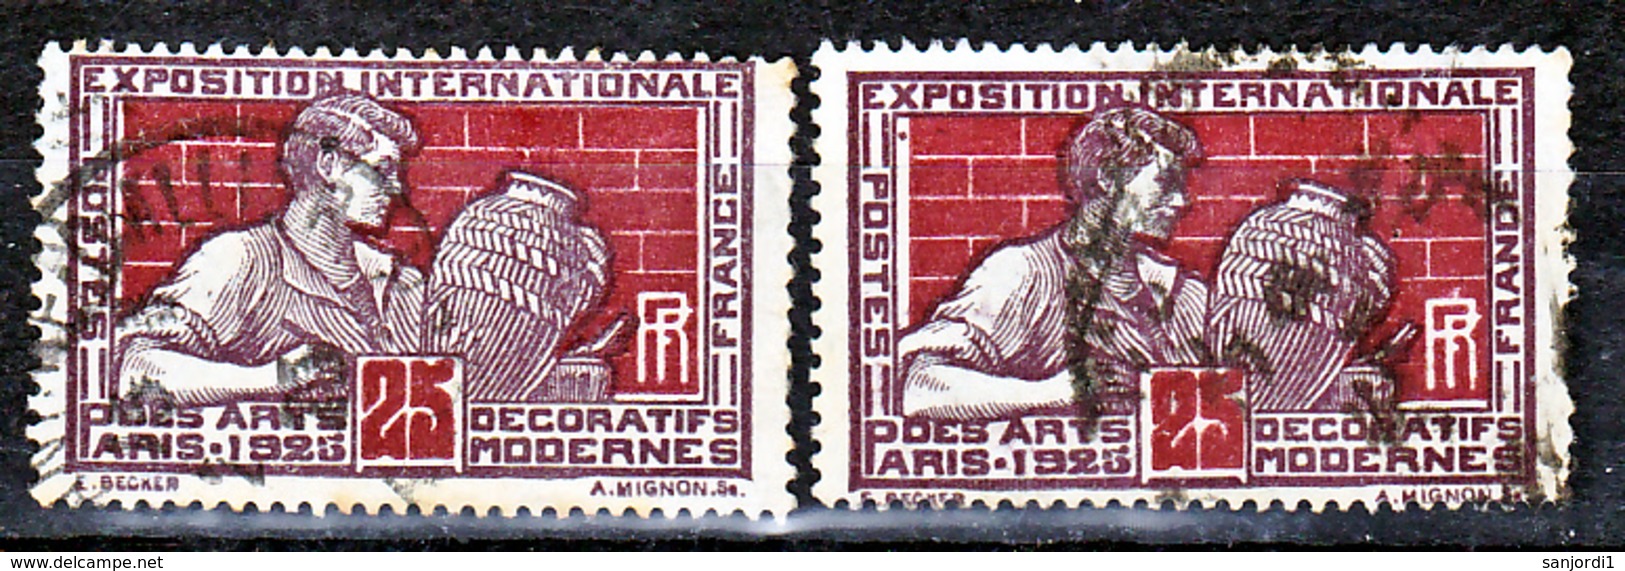 France 212 Variété Chiffre 2 Fermé Et Normal Oblitéré Used - Used Stamps